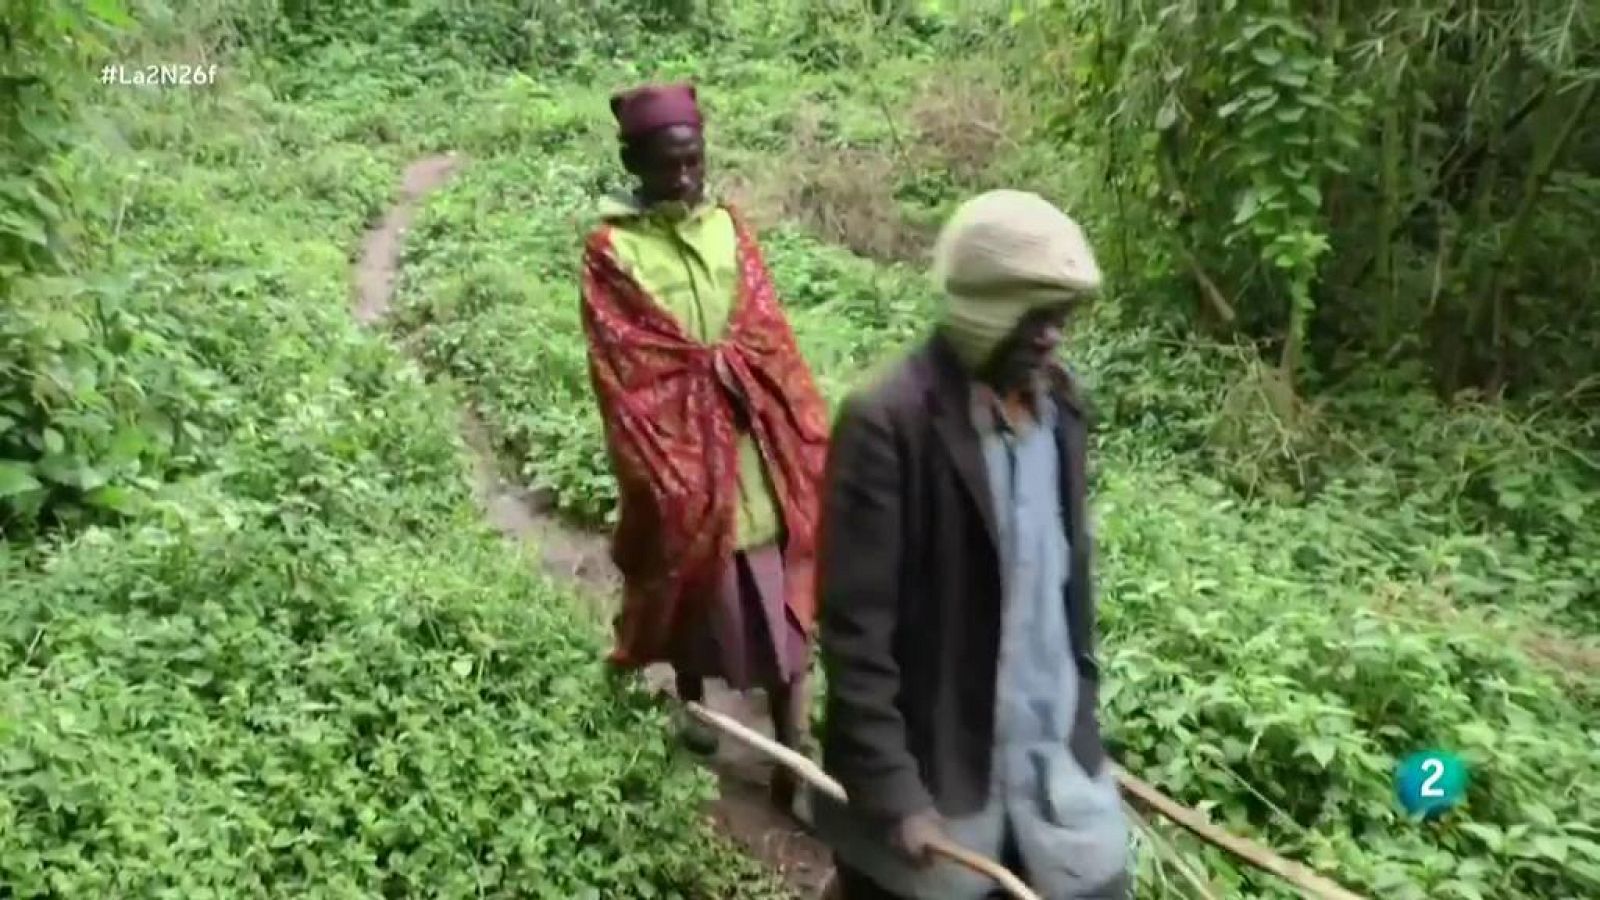 La 2 Noticias: La tribu pigmea de Batwa propone conservar y replantar las semillas  | RTVE Play